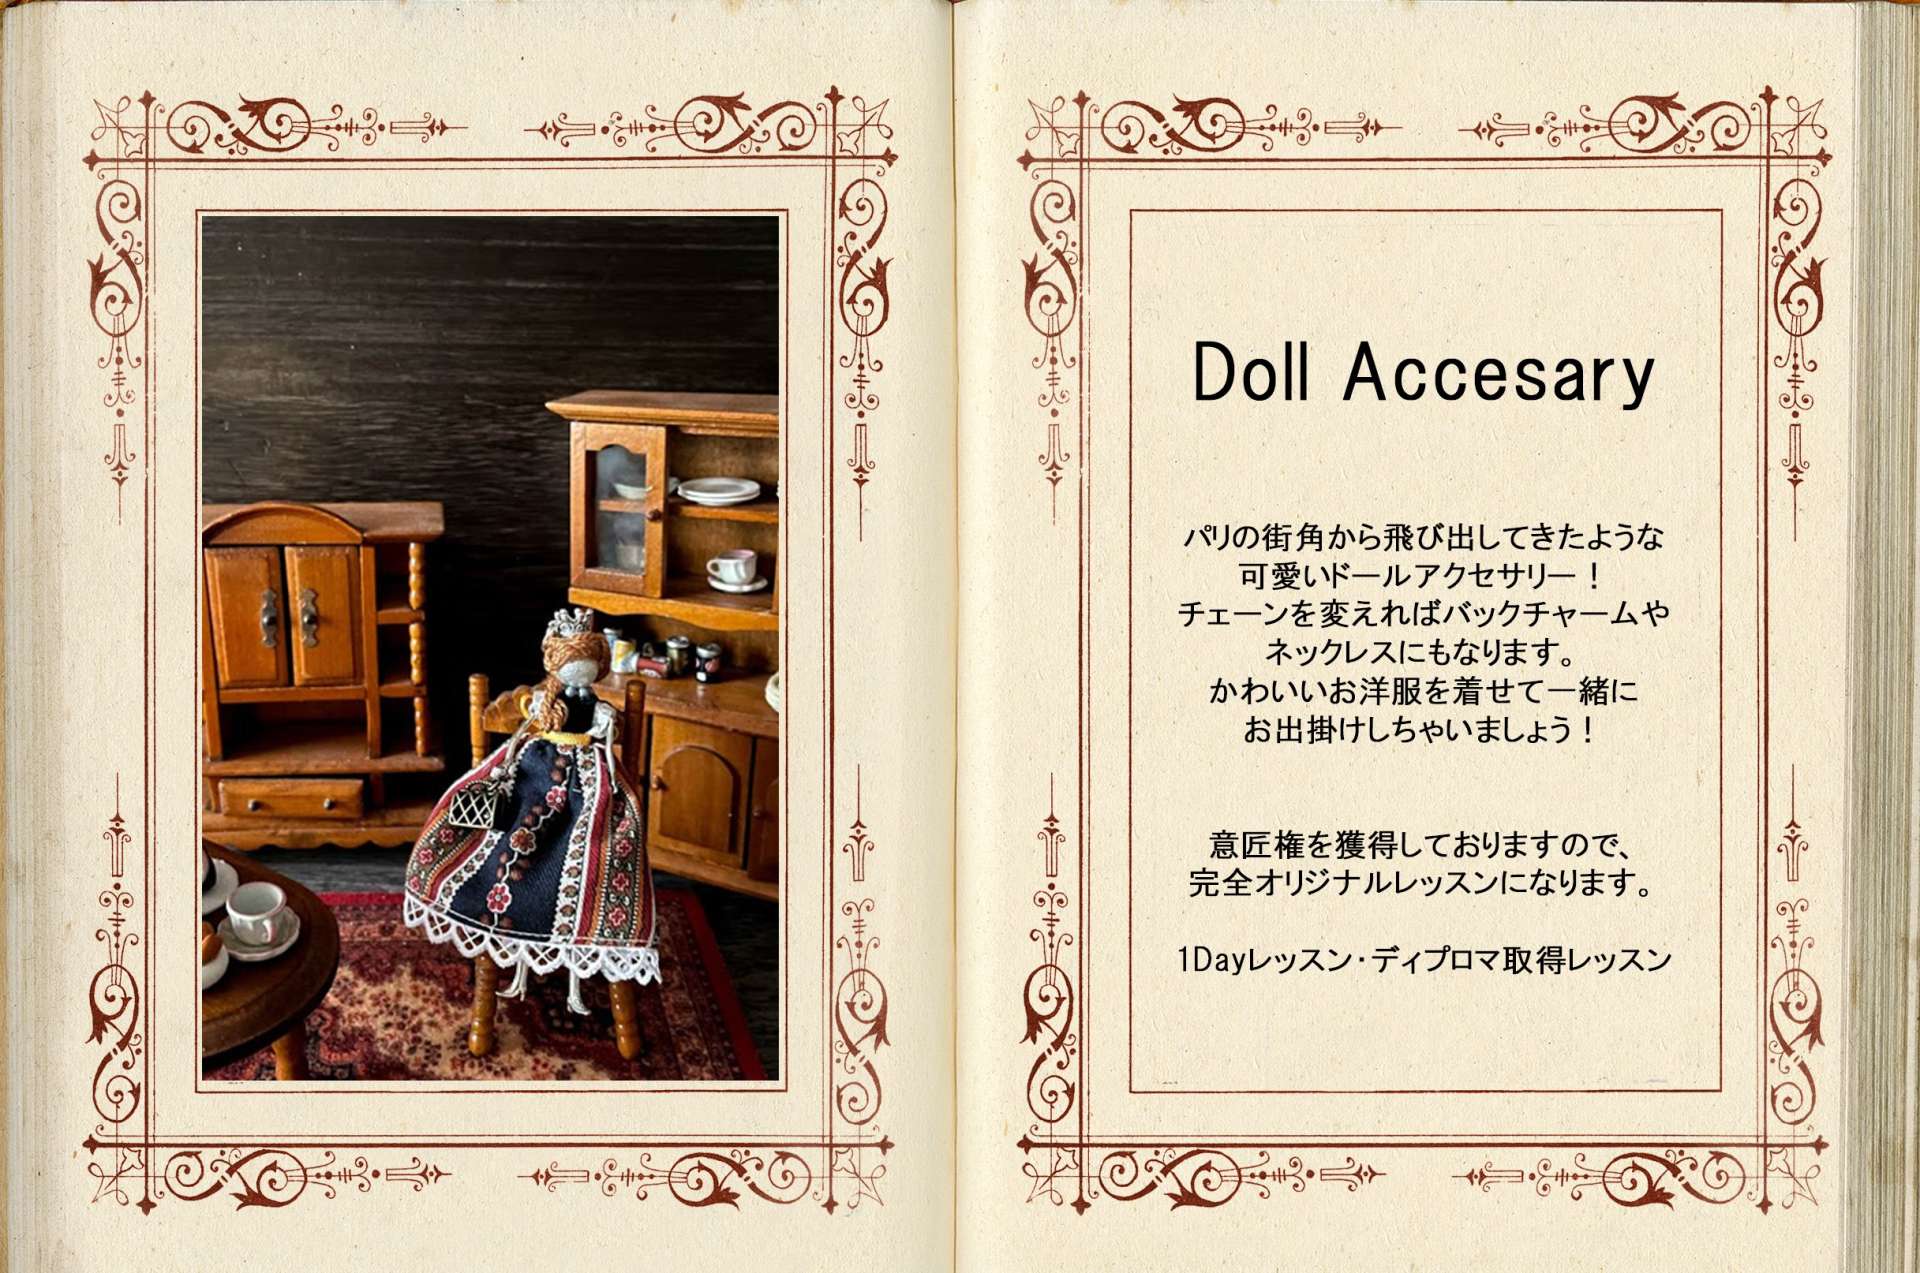 Doll Accesary